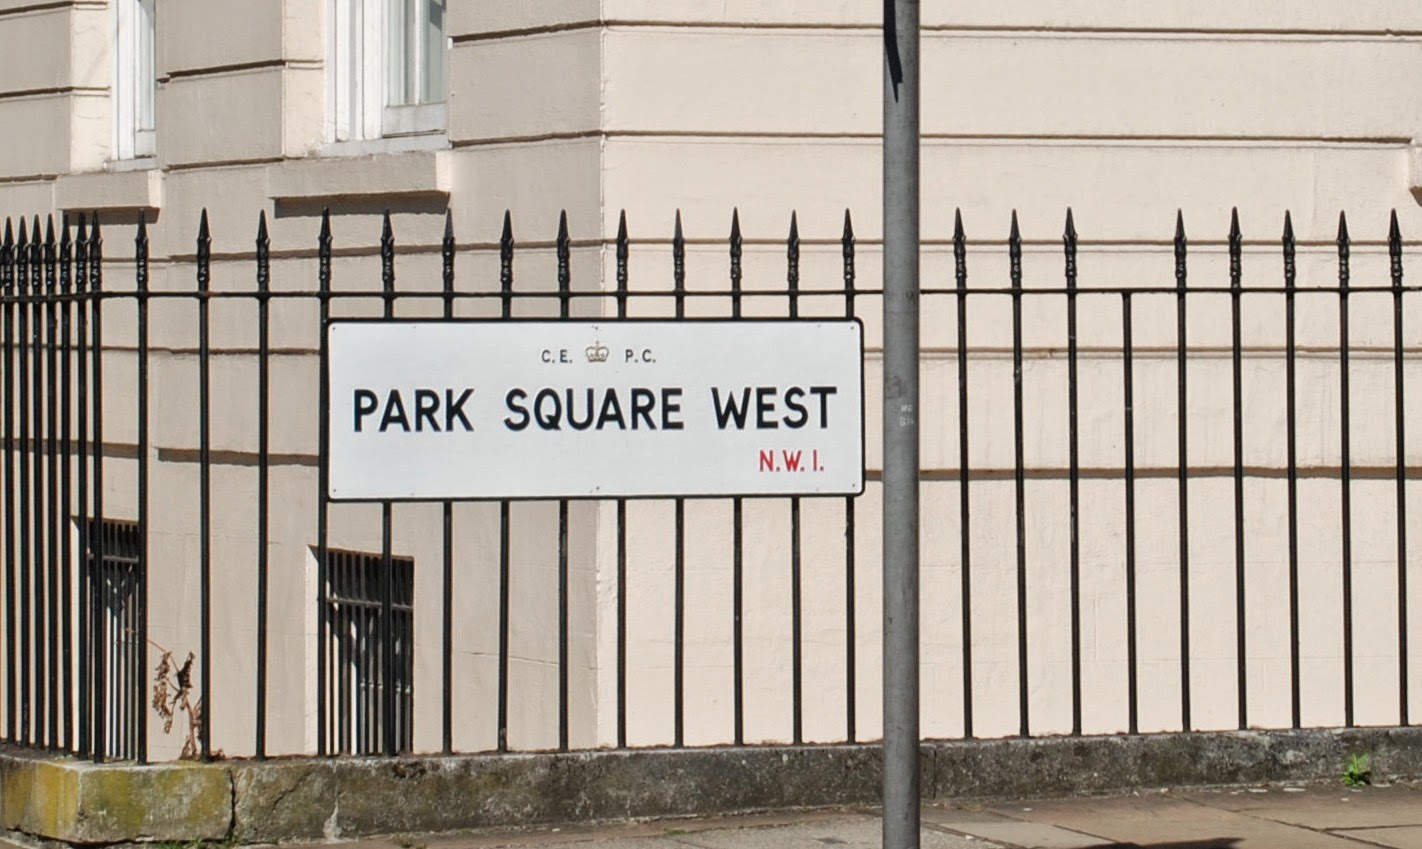 Park Square West, London